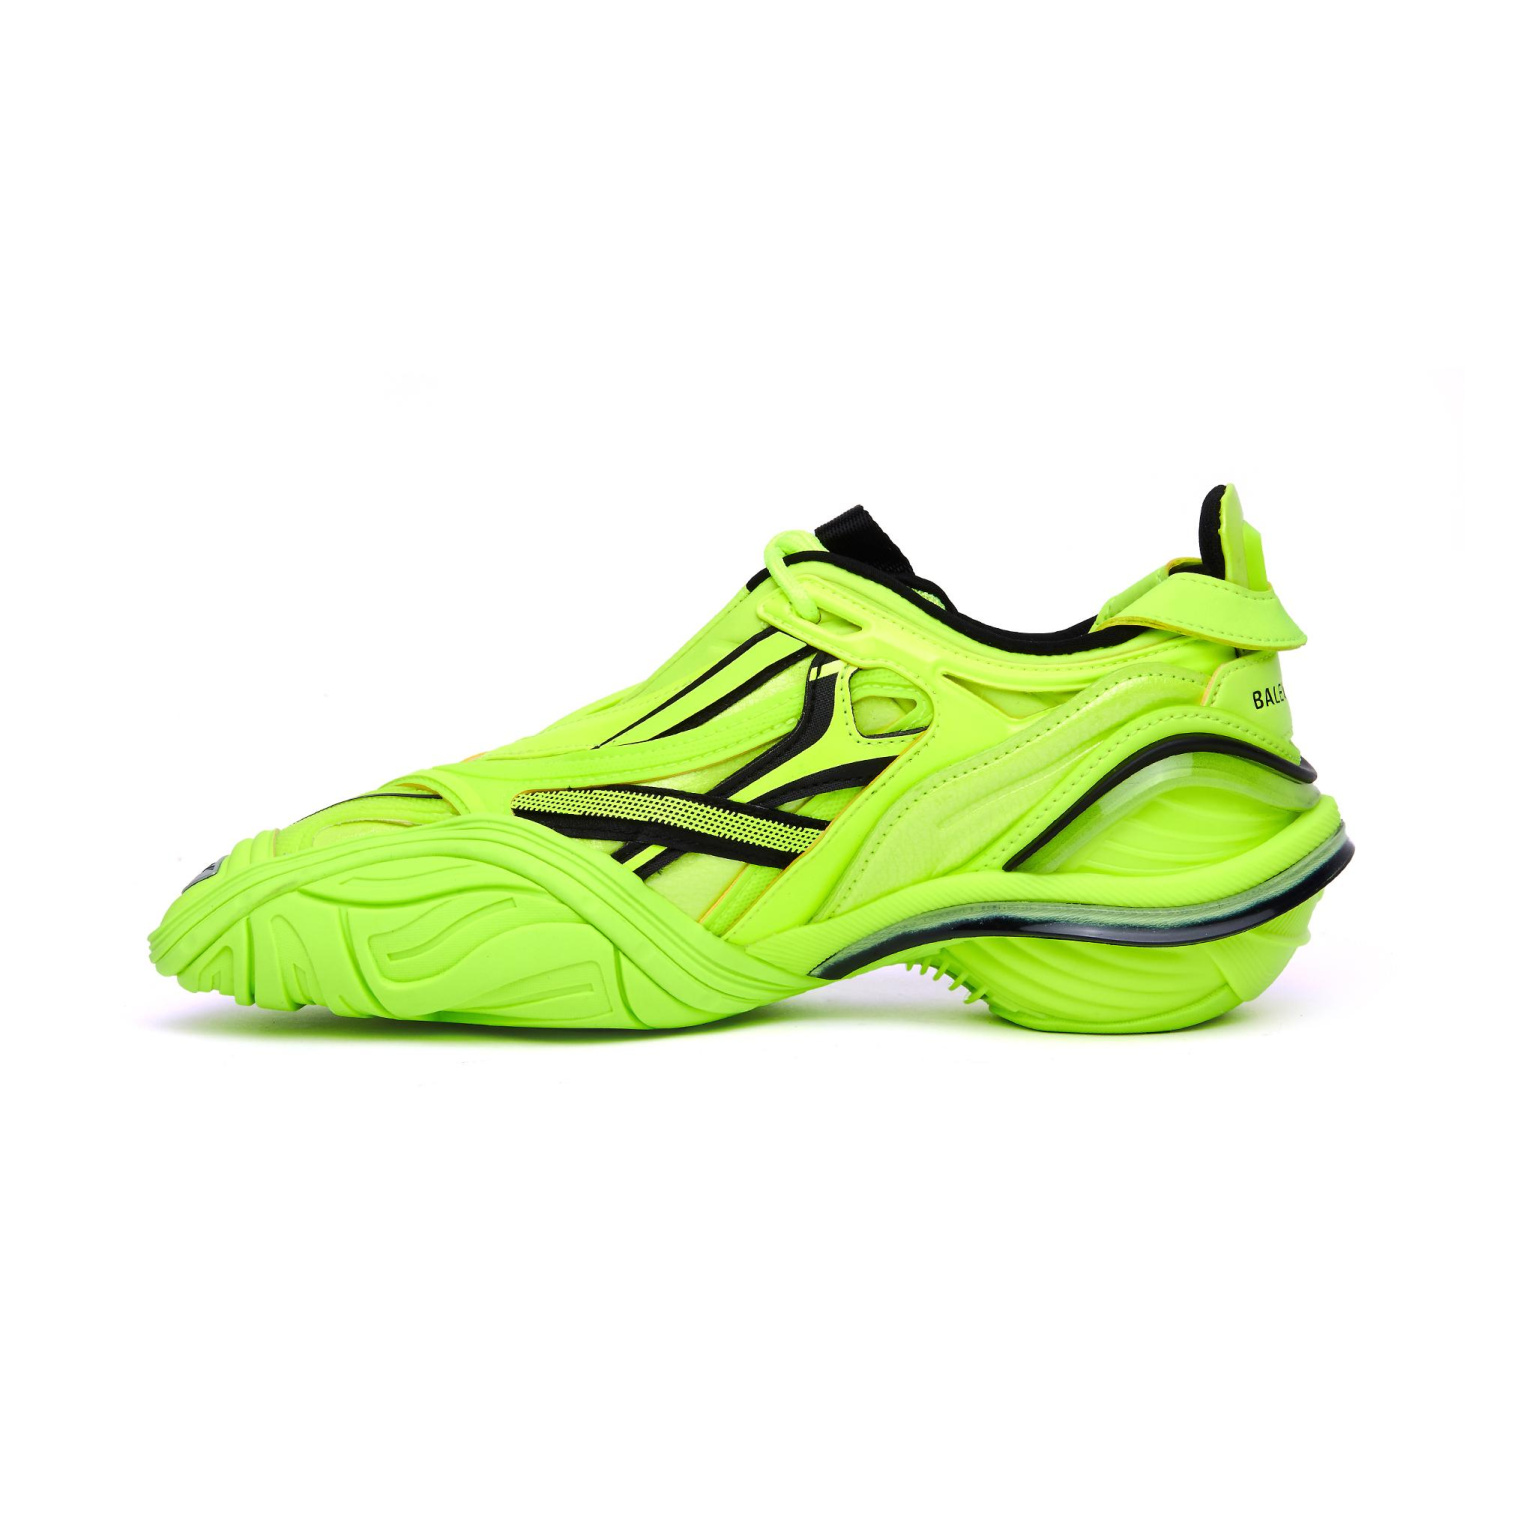 Balenciaga Tyrex Neon Yellow Sneakers